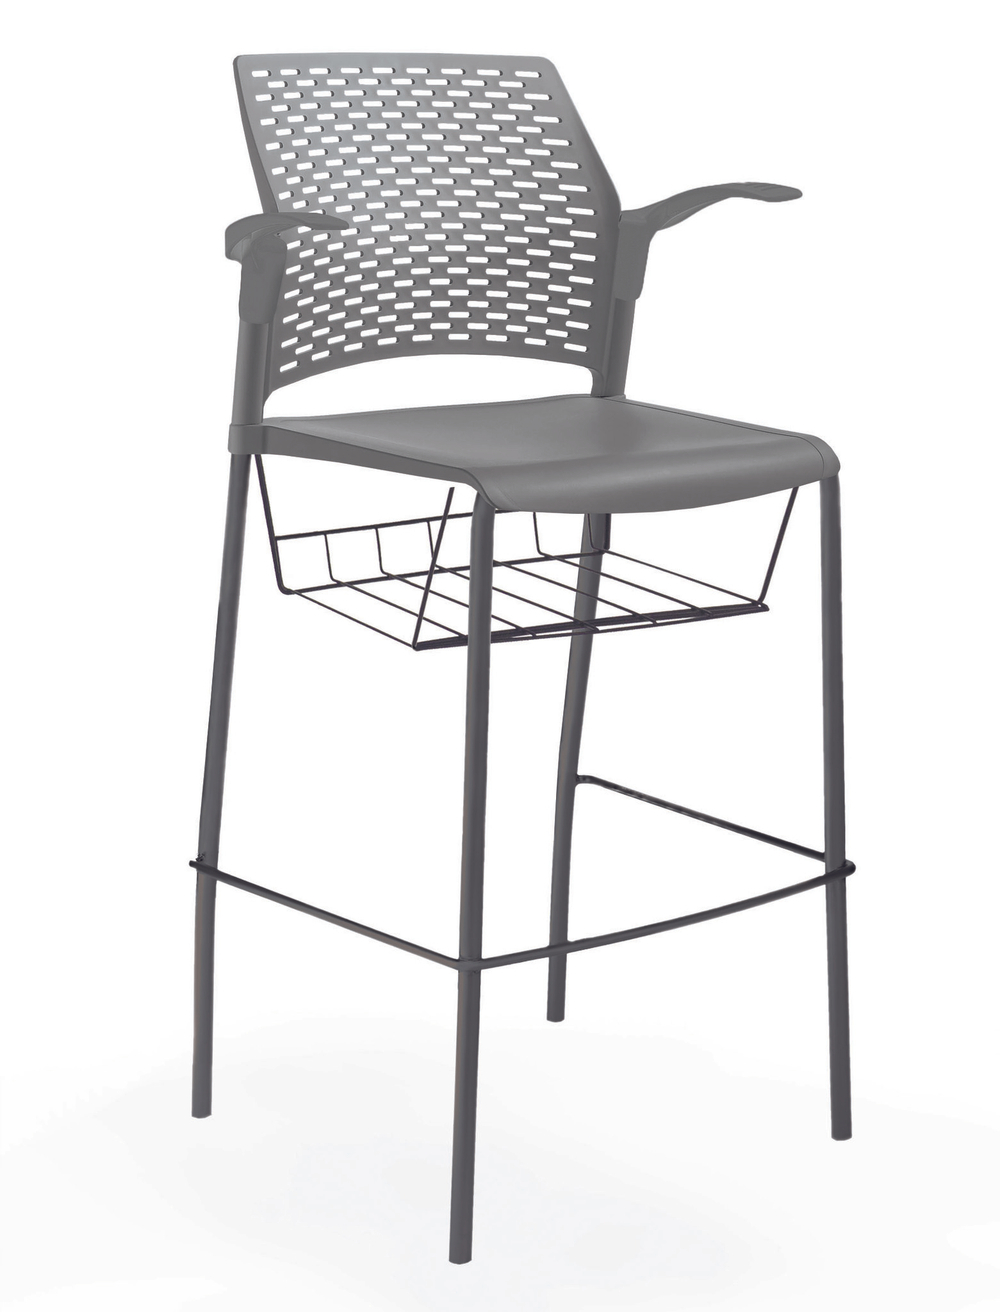 стул Rewind барный, каркас черный, пластик серый, с открытыми подлокотниками, с подседельной корзиной, без обивки